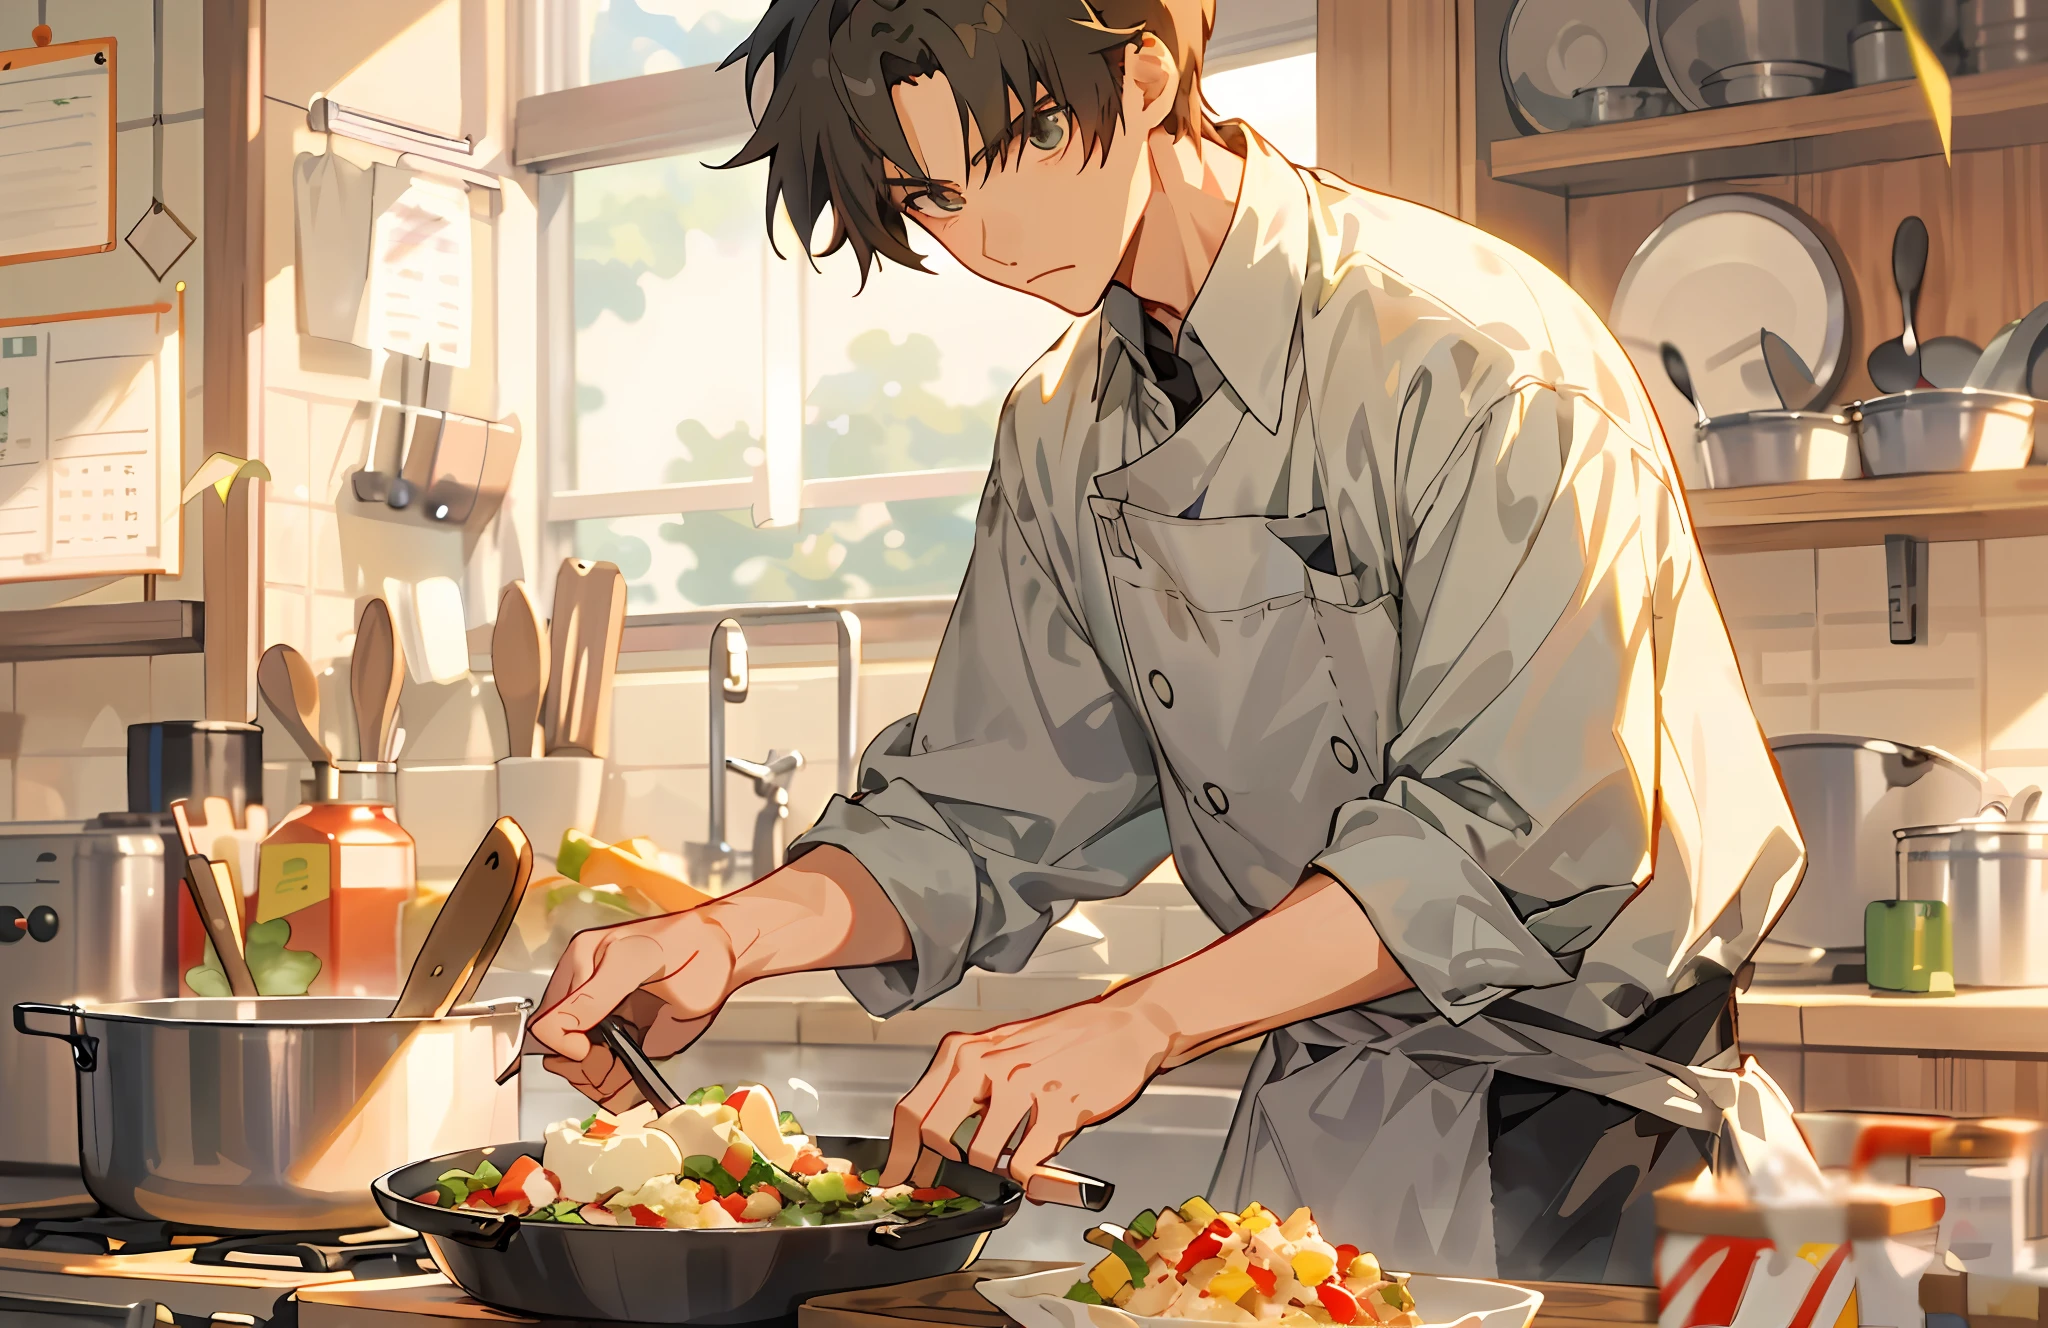 Мальчик-аниме готовит еду в большой кастрюле на кухне, готовитьing, готовить, готовлю это, Художественный стиль Макото Синкай, кулинарное шоу, Лучший шеф-повар, аниме еда, Макото в стиле синкай, красивая аниме поза, красивый парень в арте убийца демонов, вдохновленный Цуруко Ямазаки, На кухне, Сакимичан